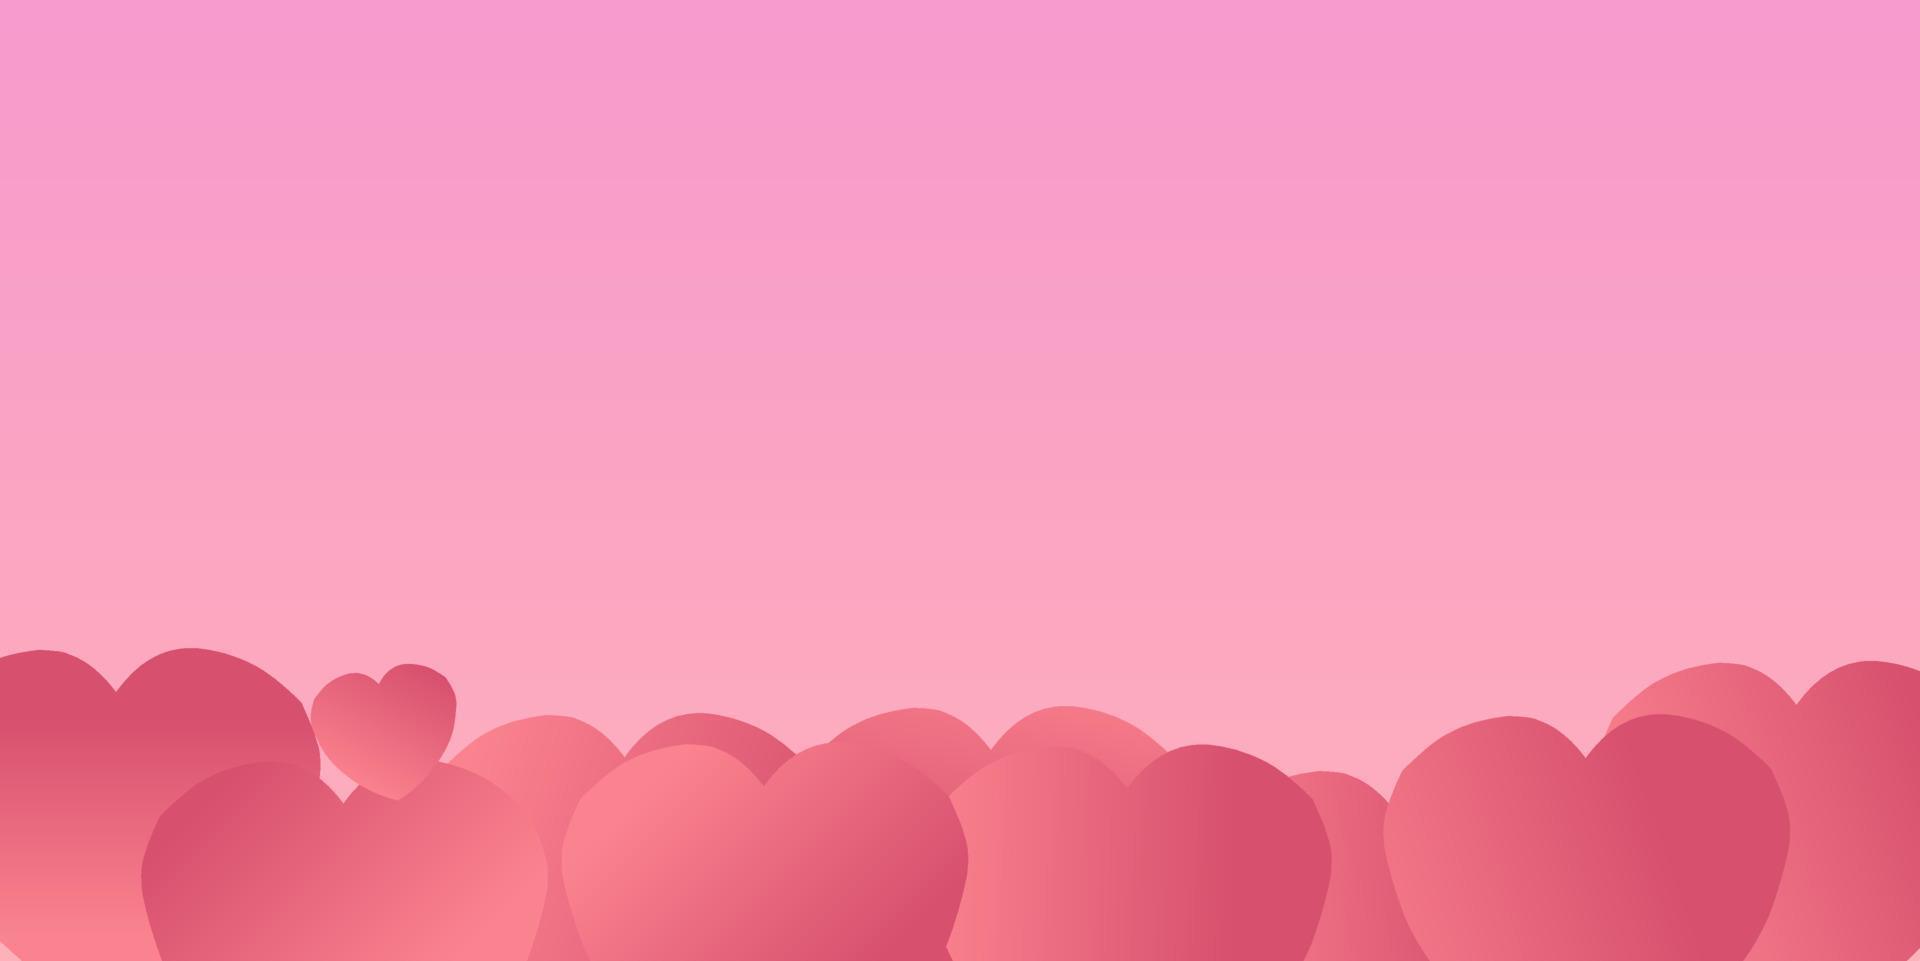 Valentinstag-Design. kreative illustration romantischer hintergrund, platz für text. liebeskonzept für glücklichen muttertag, valentinstag, geburtstag, frauentag usw vektor